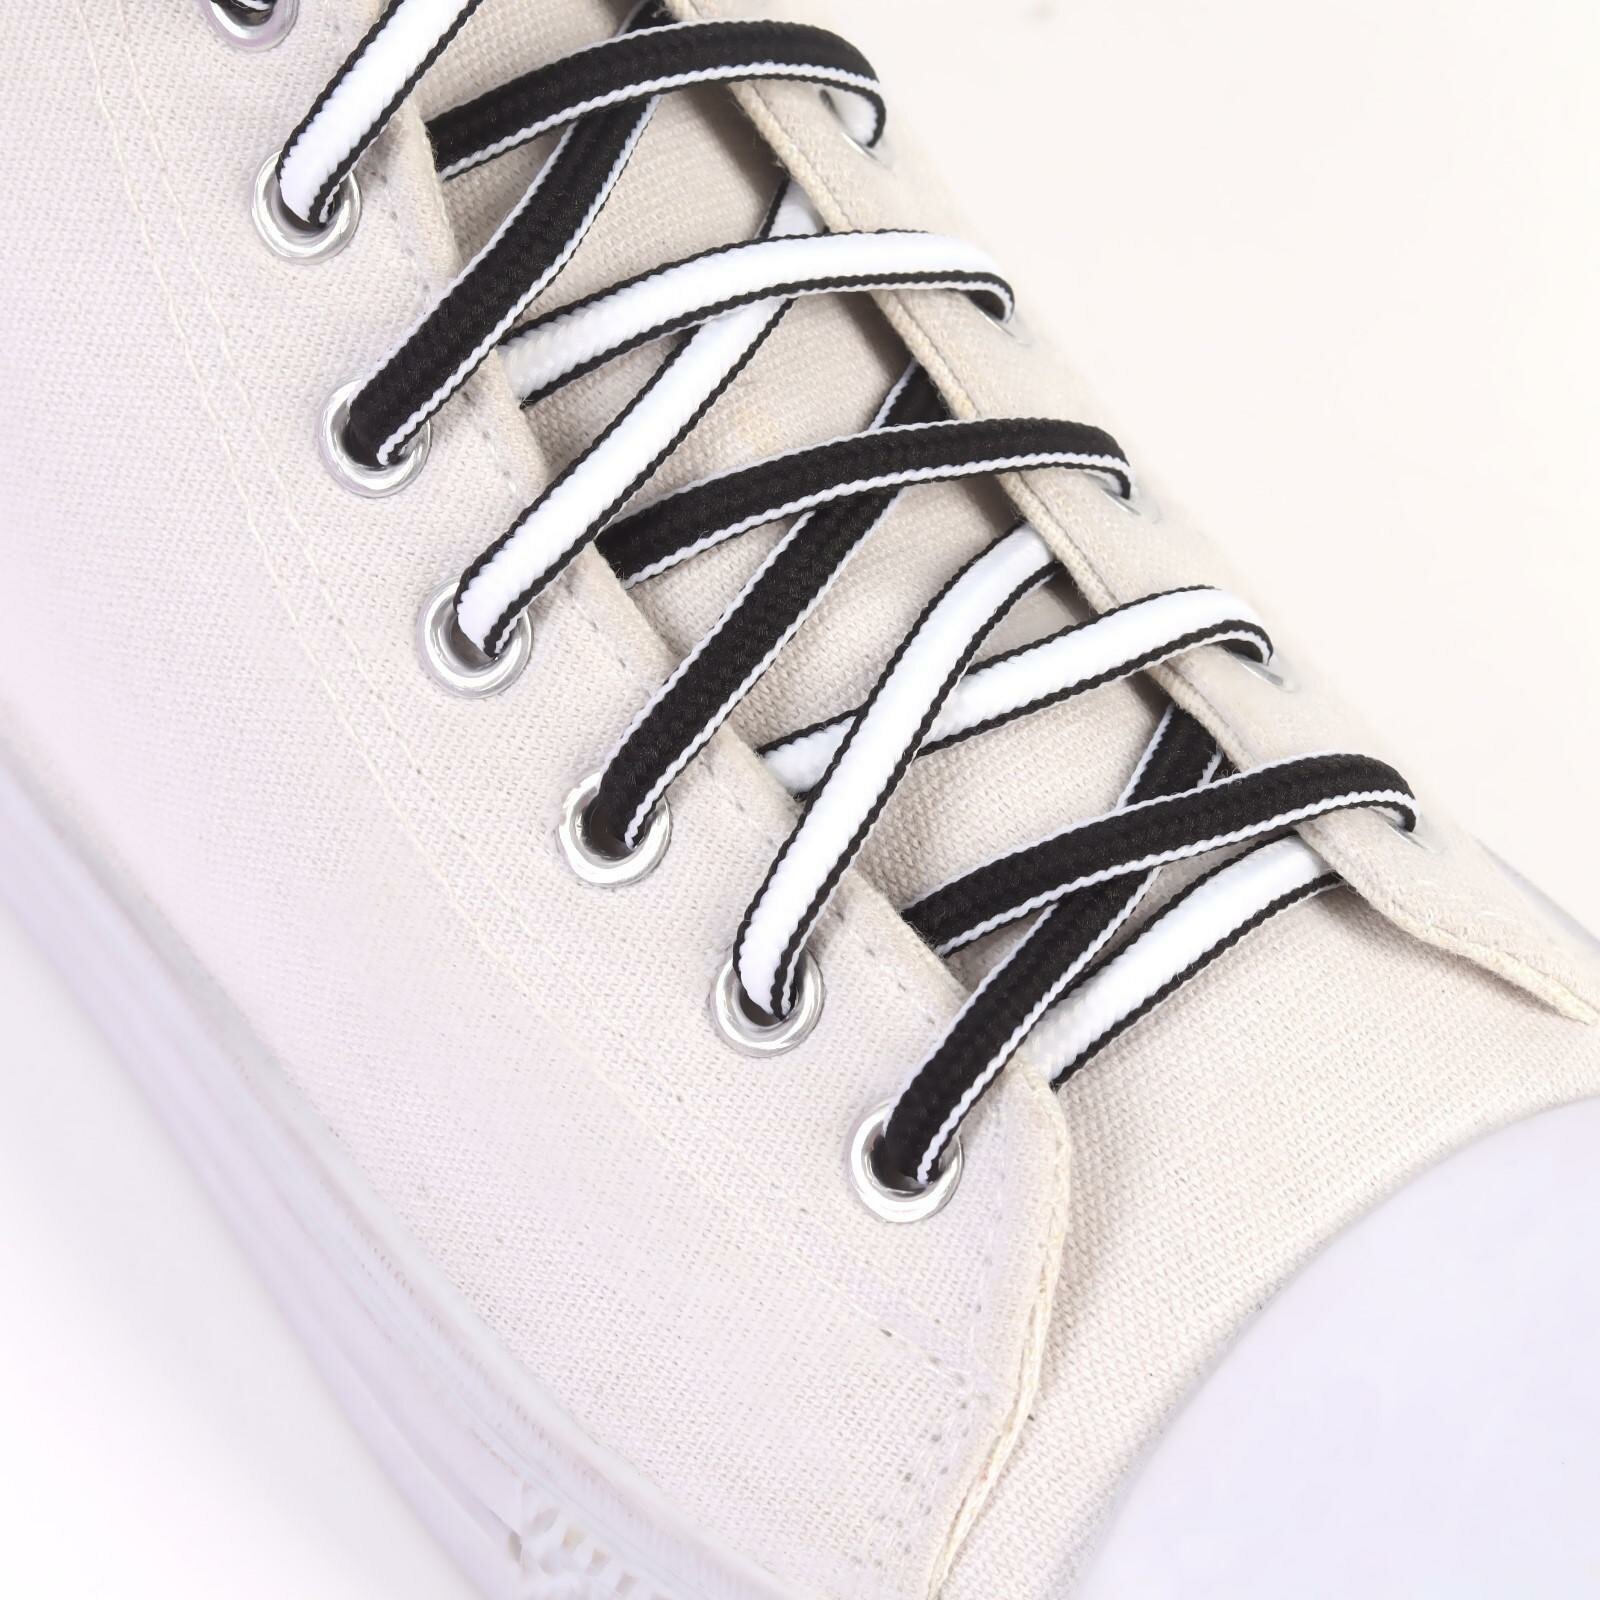 Шнурки для обуви пара круглые d = 5 мм 110 см цвет чёрный/белый